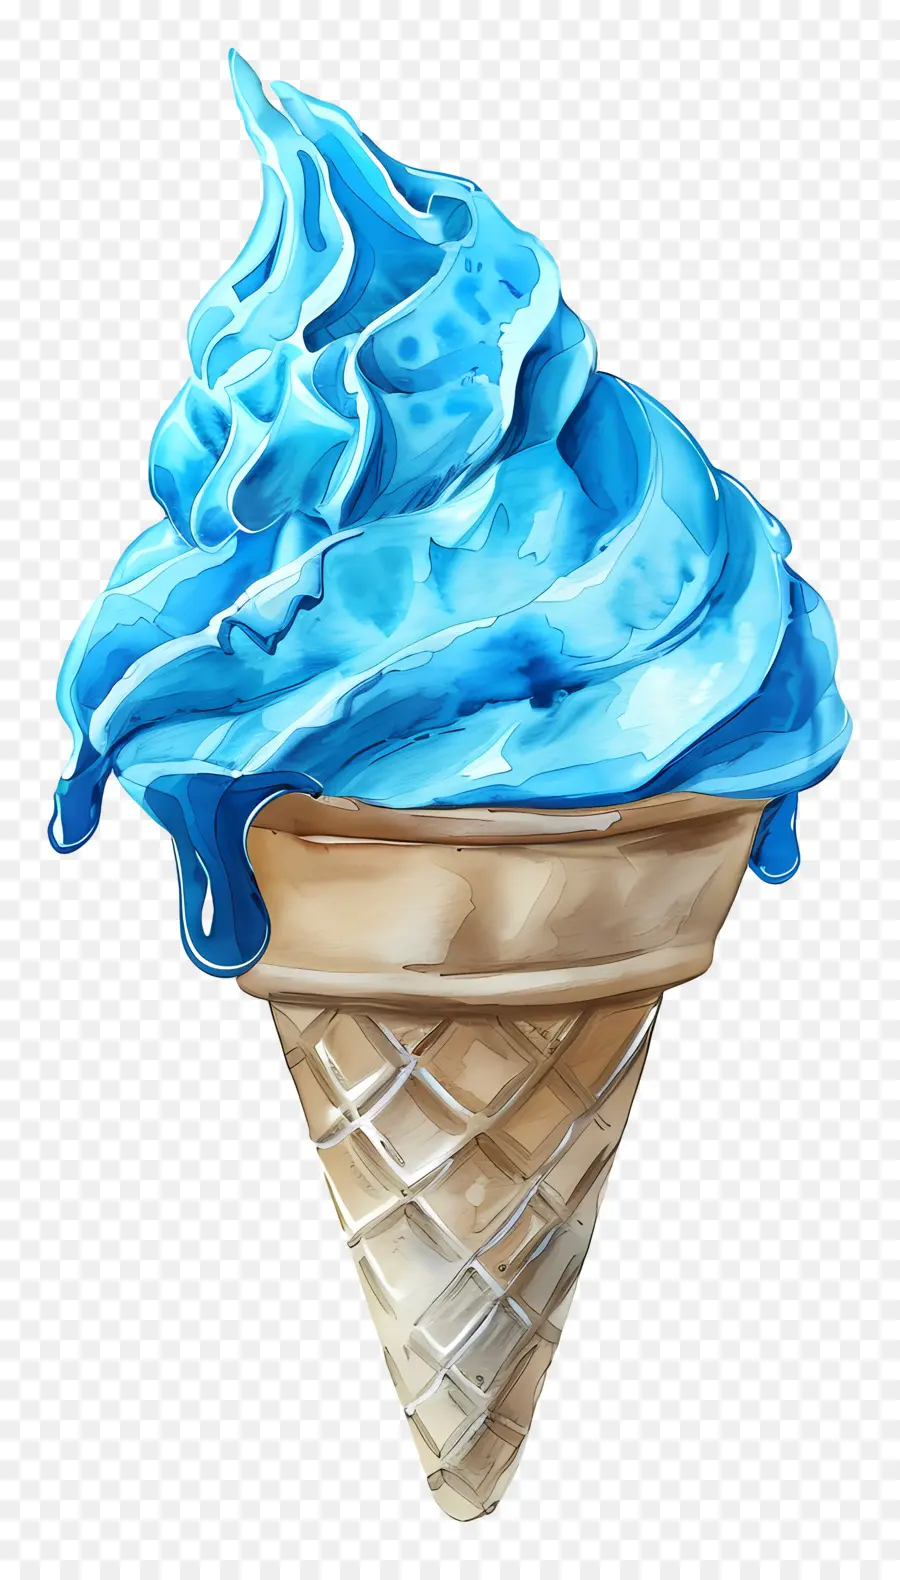 Blaues Eisblau -Eiscreme -Zapfen eisige Textur wässrig - Blauer Eiskegel mit wässriger Textur